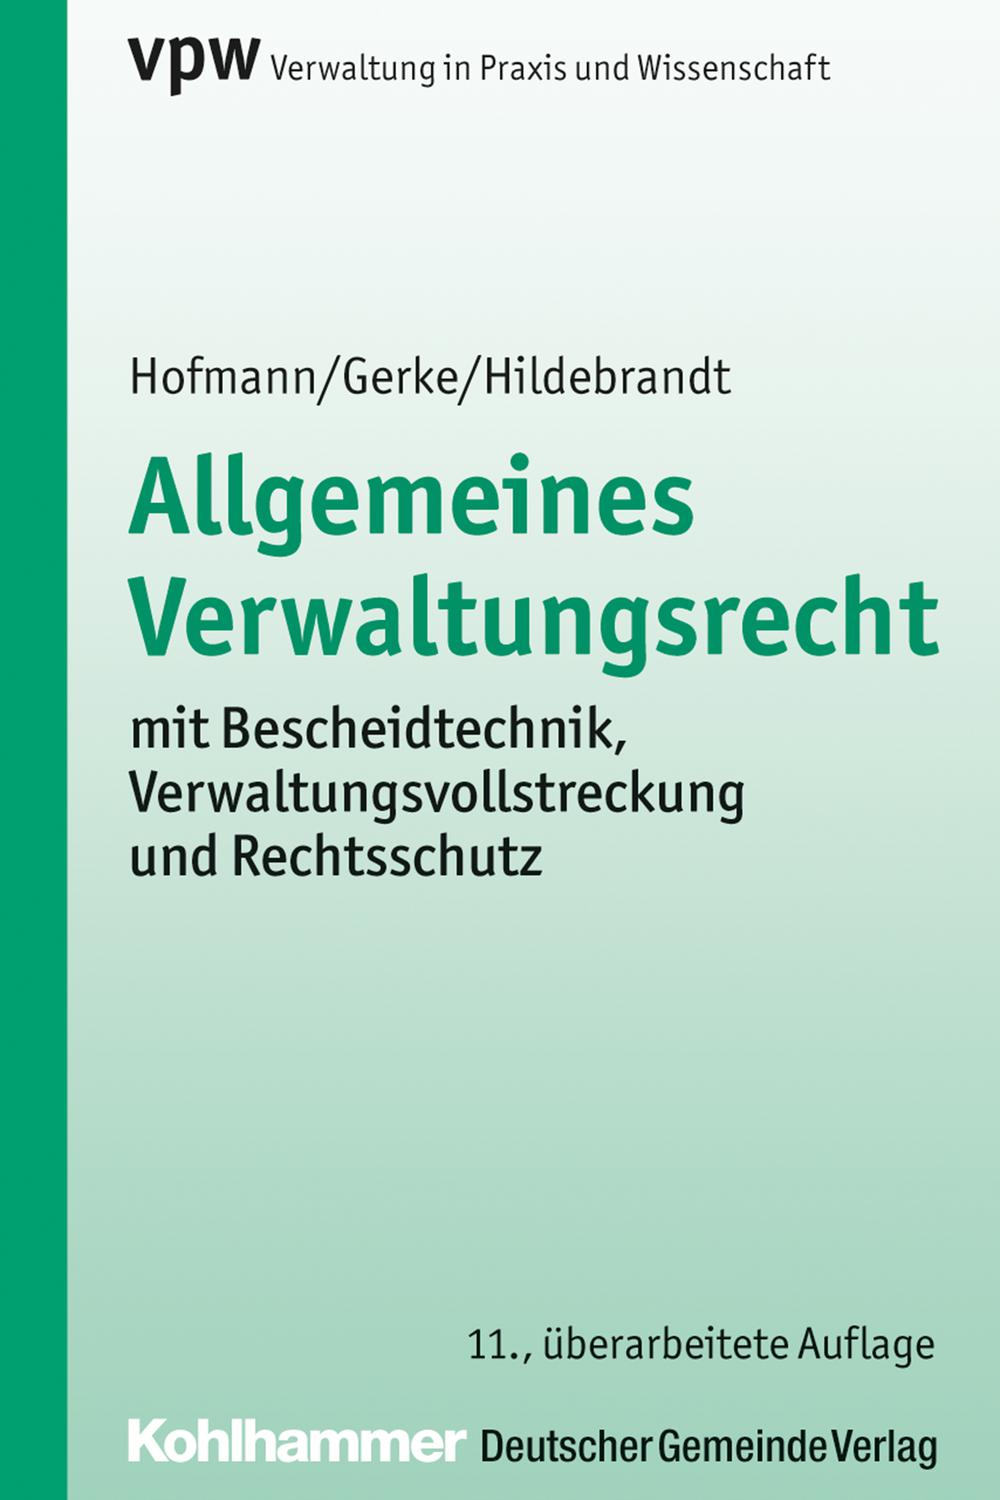 Allgemeines Verwaltungsrecht - Harald Hofmann, J?rgen Gerke, Uta Hildebrandt,,